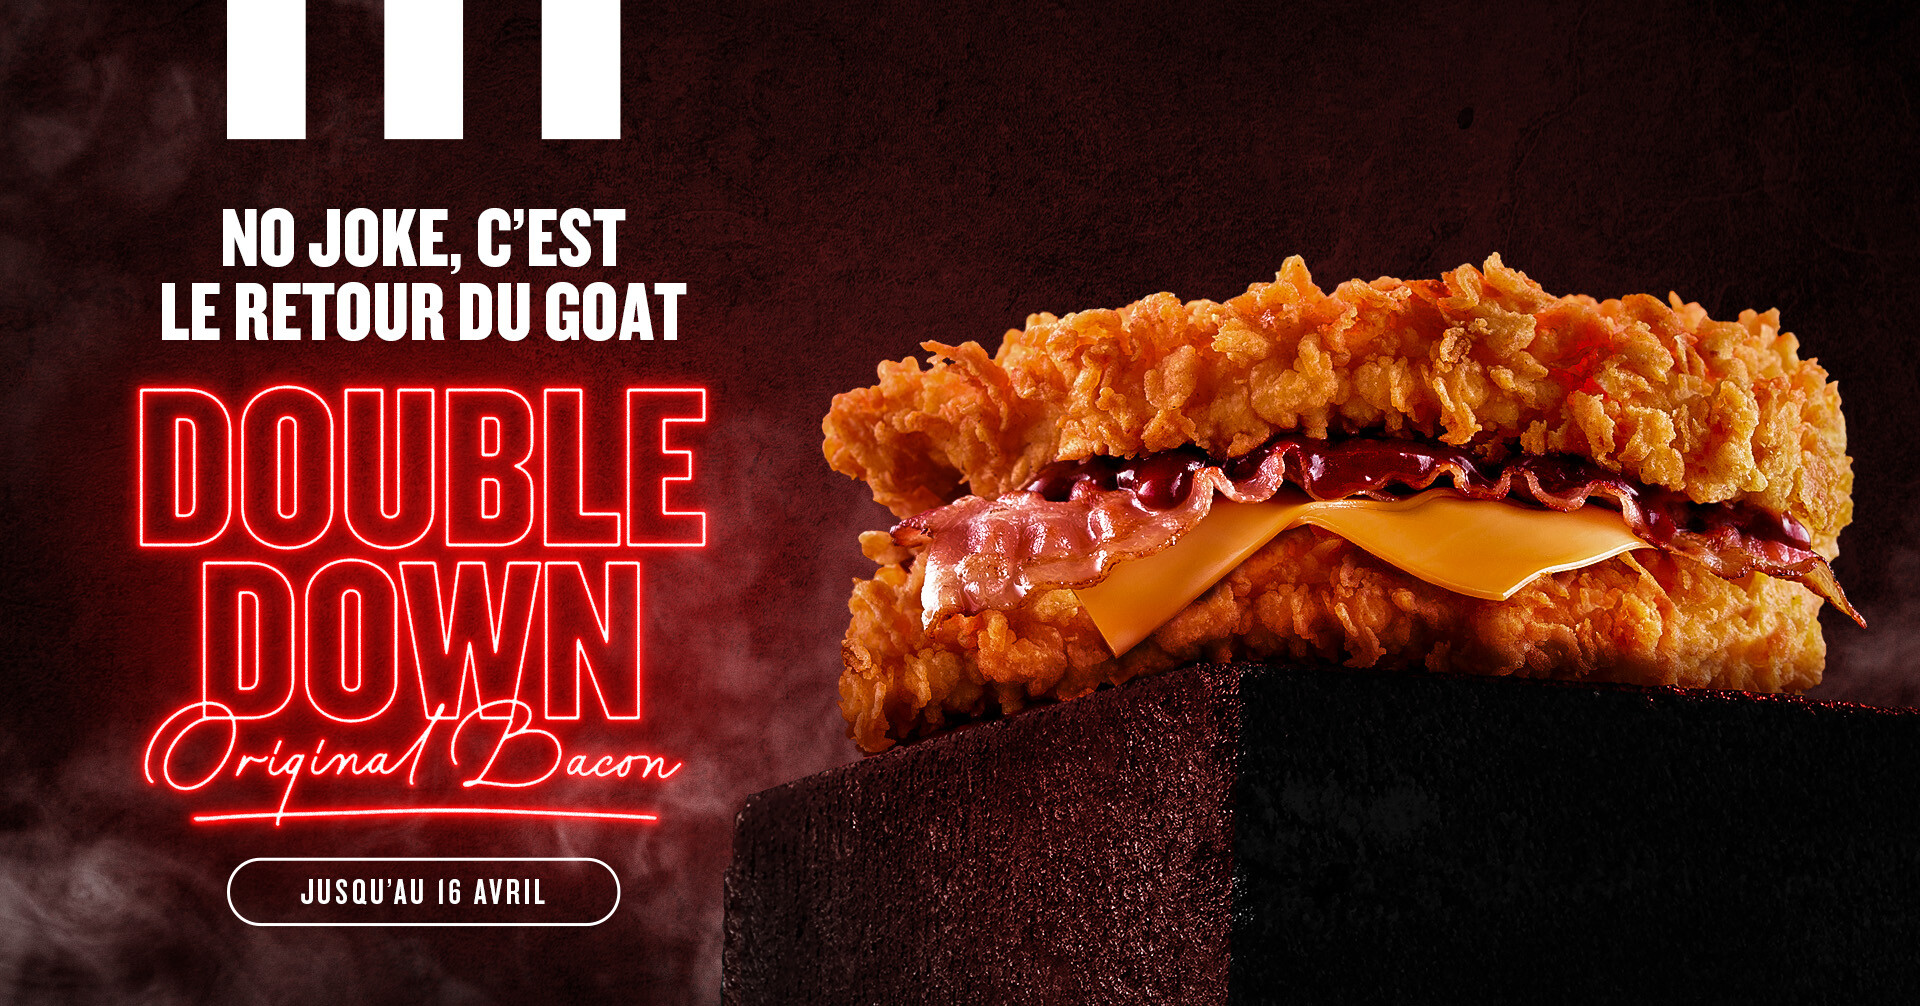 Après 7 ans d’absence le Double Down fait son grand retour chez KFC ! 